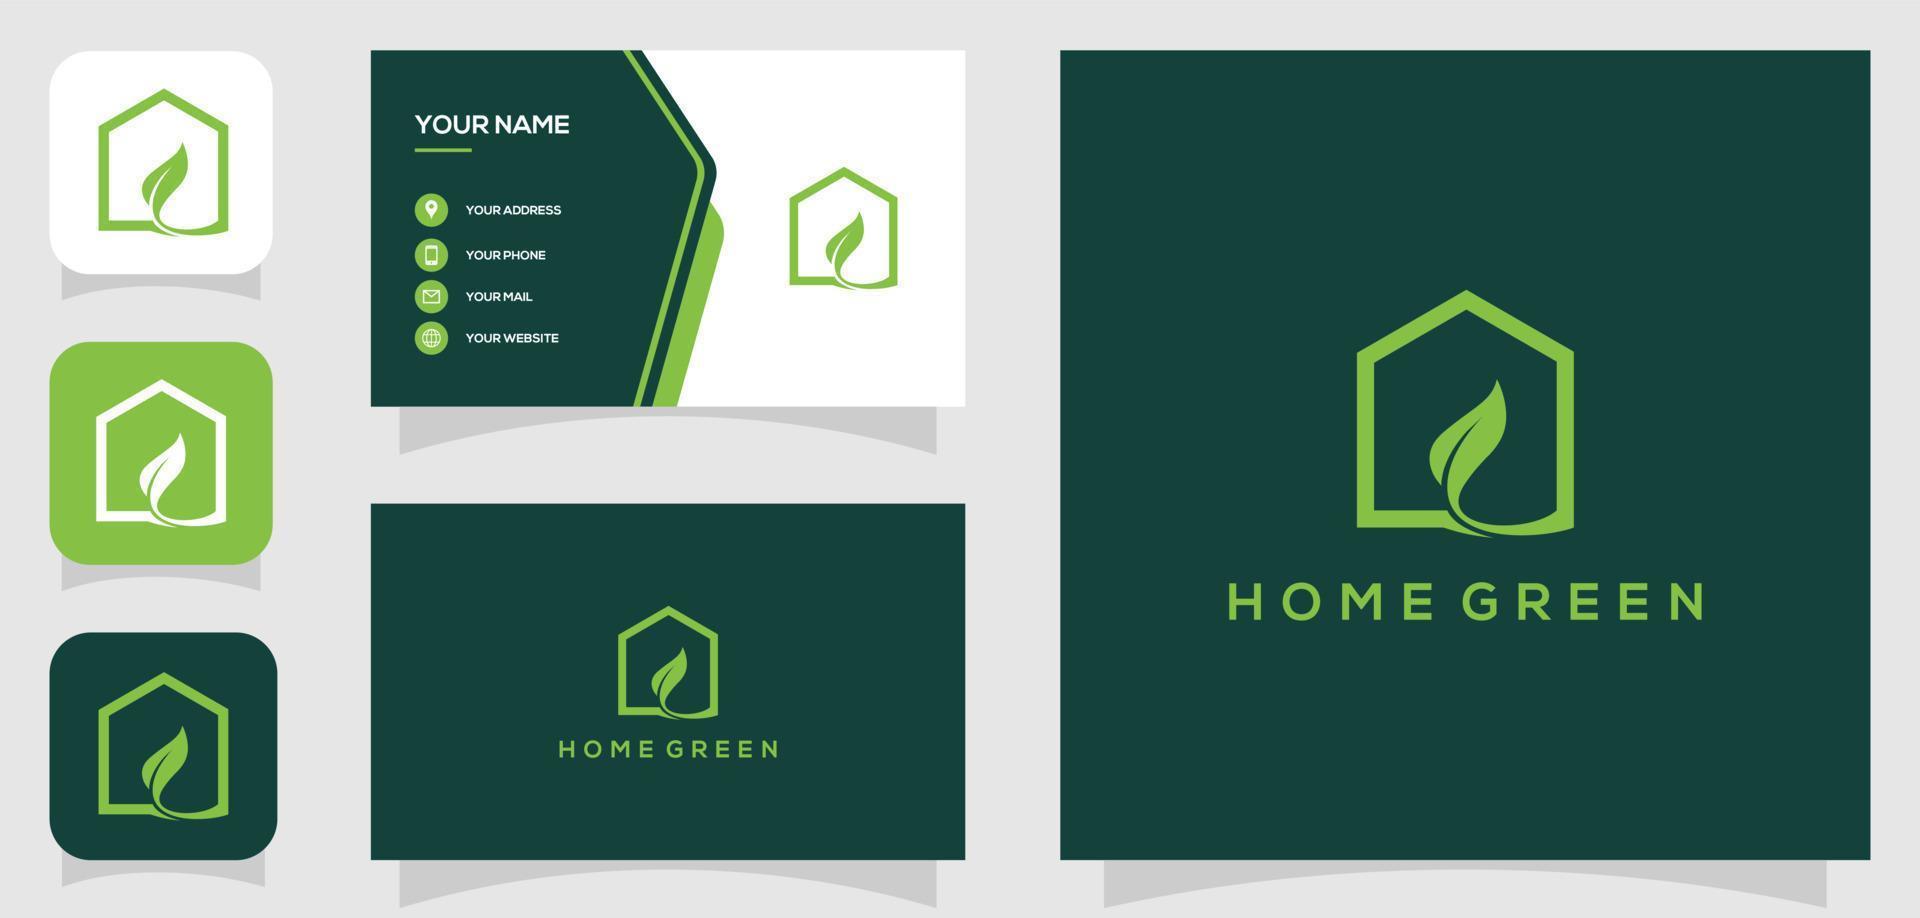 Vektorgrafik von Home Green, Blatthaus, minimalistisches Logo-Design mit Visitenkartenvorlage vektor